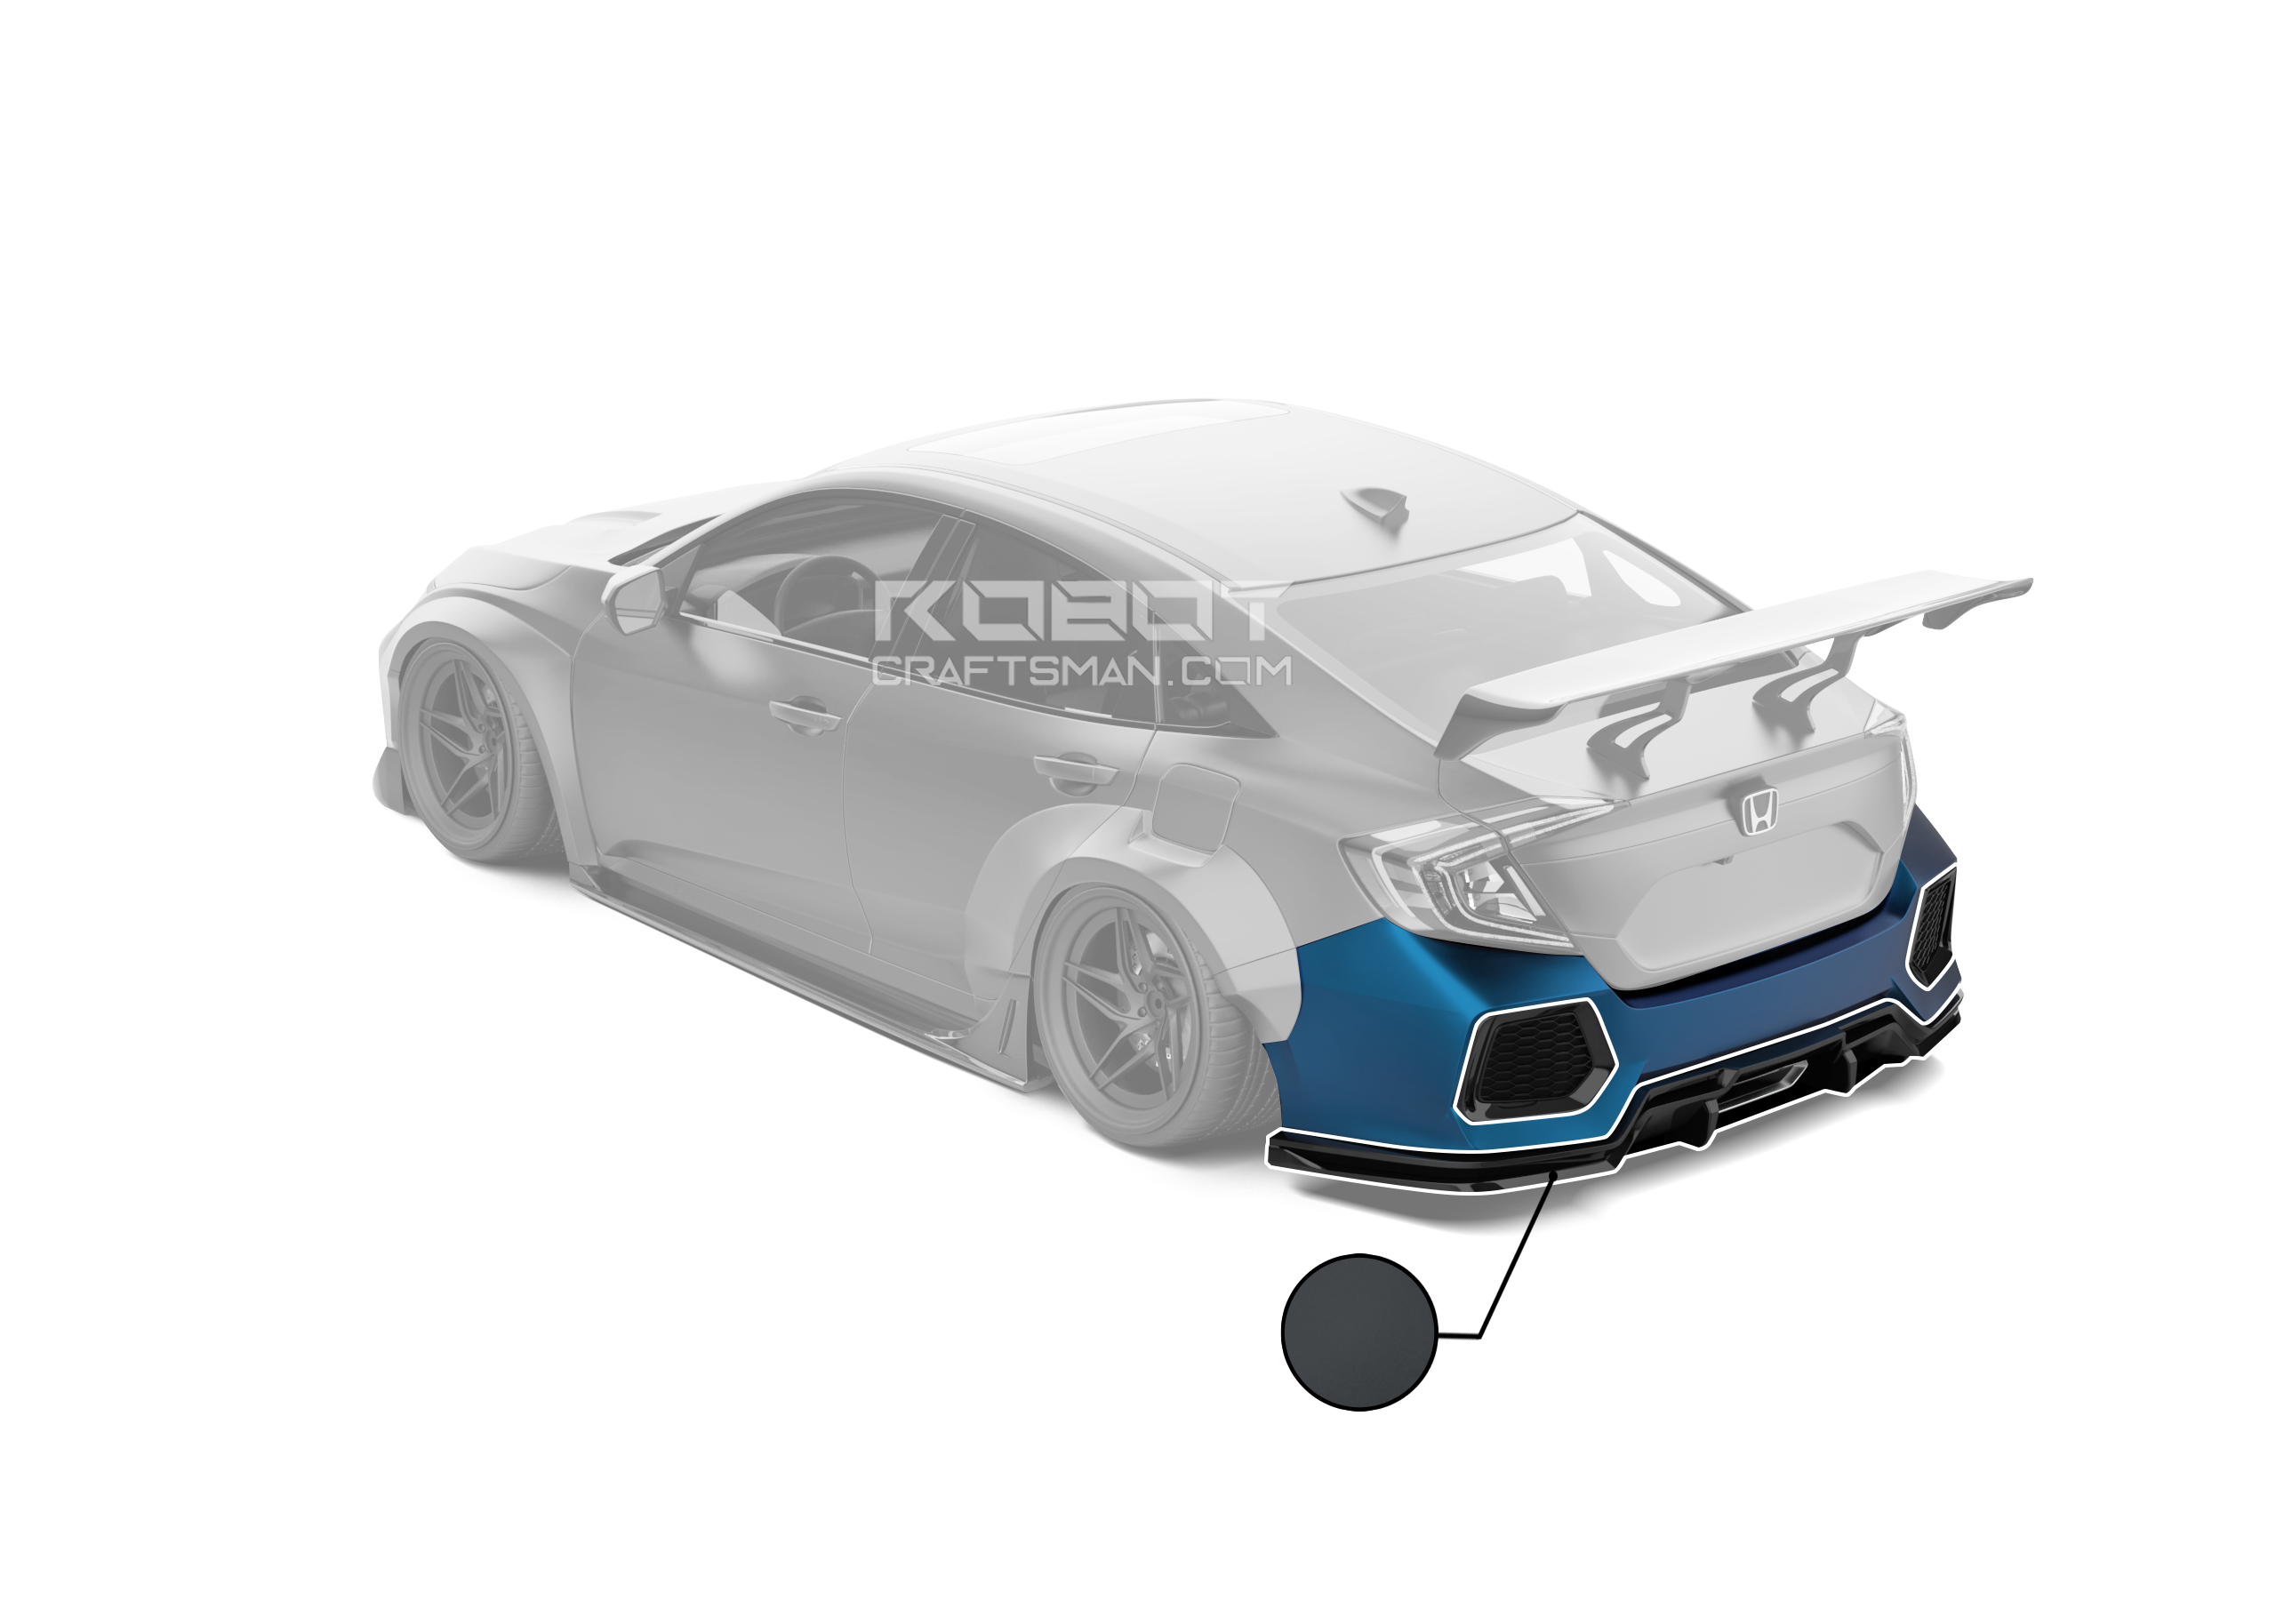 ROBOT CRAFTSMAN Carbon Fiber Rear Bumper & Rear Diffuser For Honda Civic 10th Gen